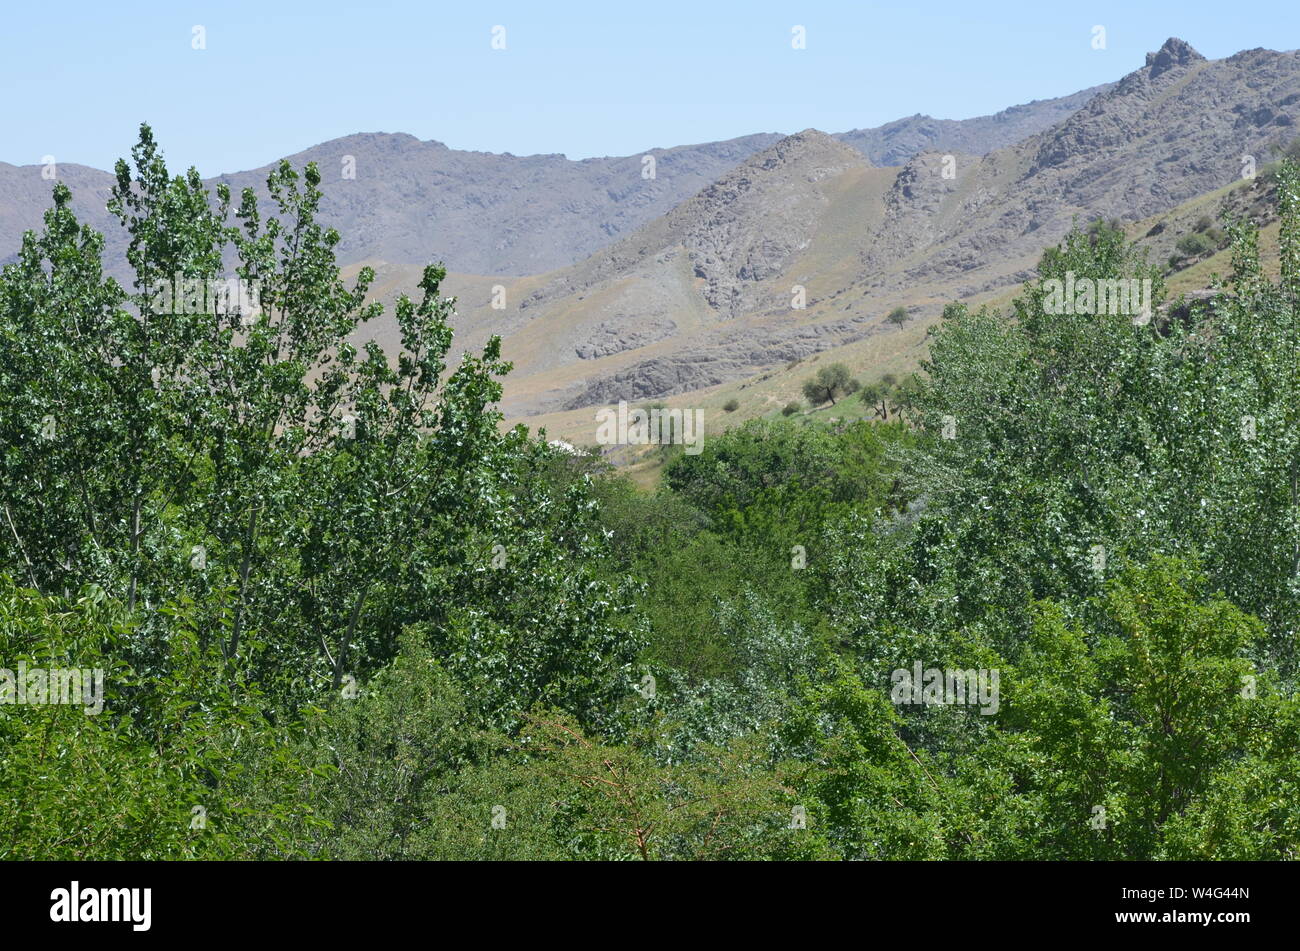 Hayat aldea en las montañas de Nurata, Central de Uzbekistán Foto de stock